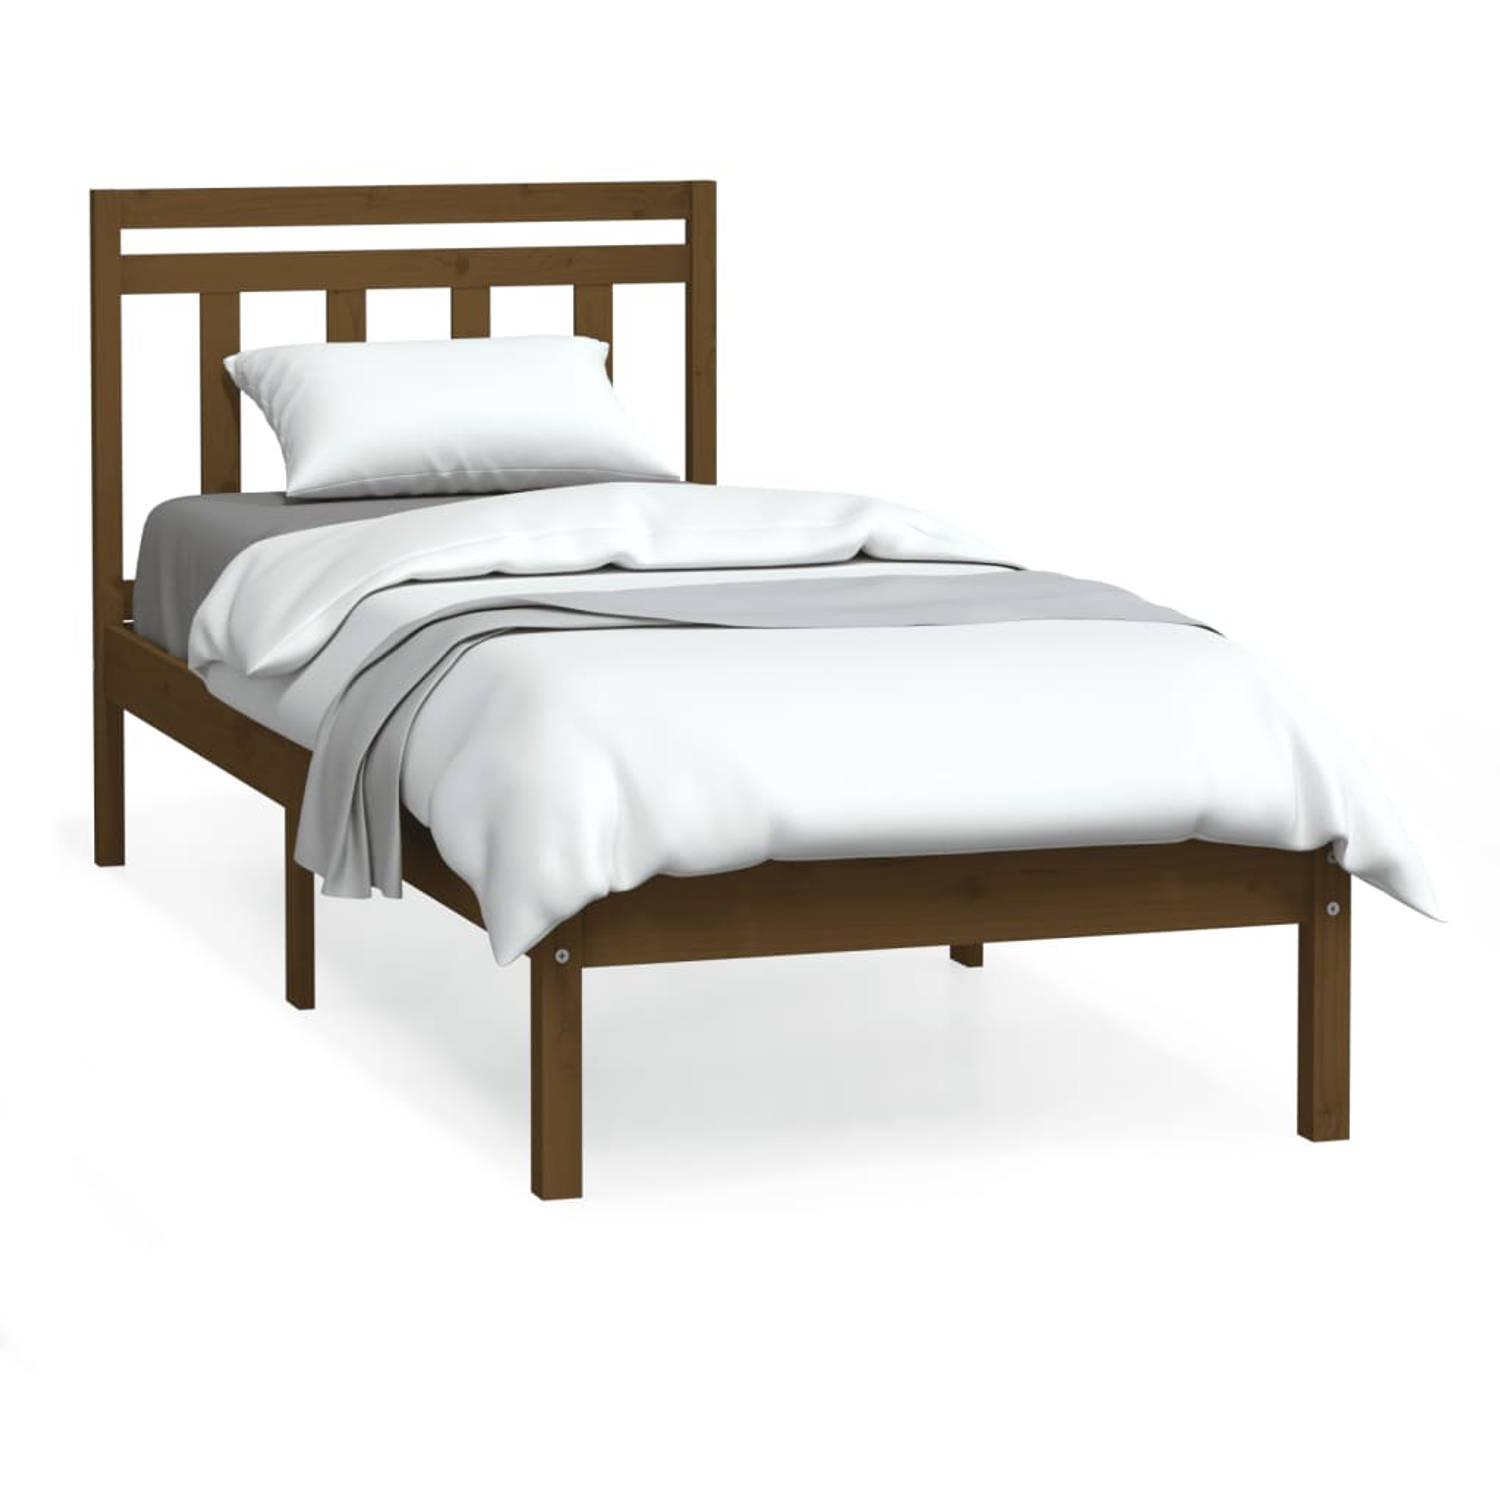 The Living Store Bedframe massief hout honingbruin 75x190 cm 2FT6 small single - Bedframe - Bedframes - Eenpersoonsbed - Bed - Bedombouw - Frame - Bed Frame - Ledikant - Bedframe M